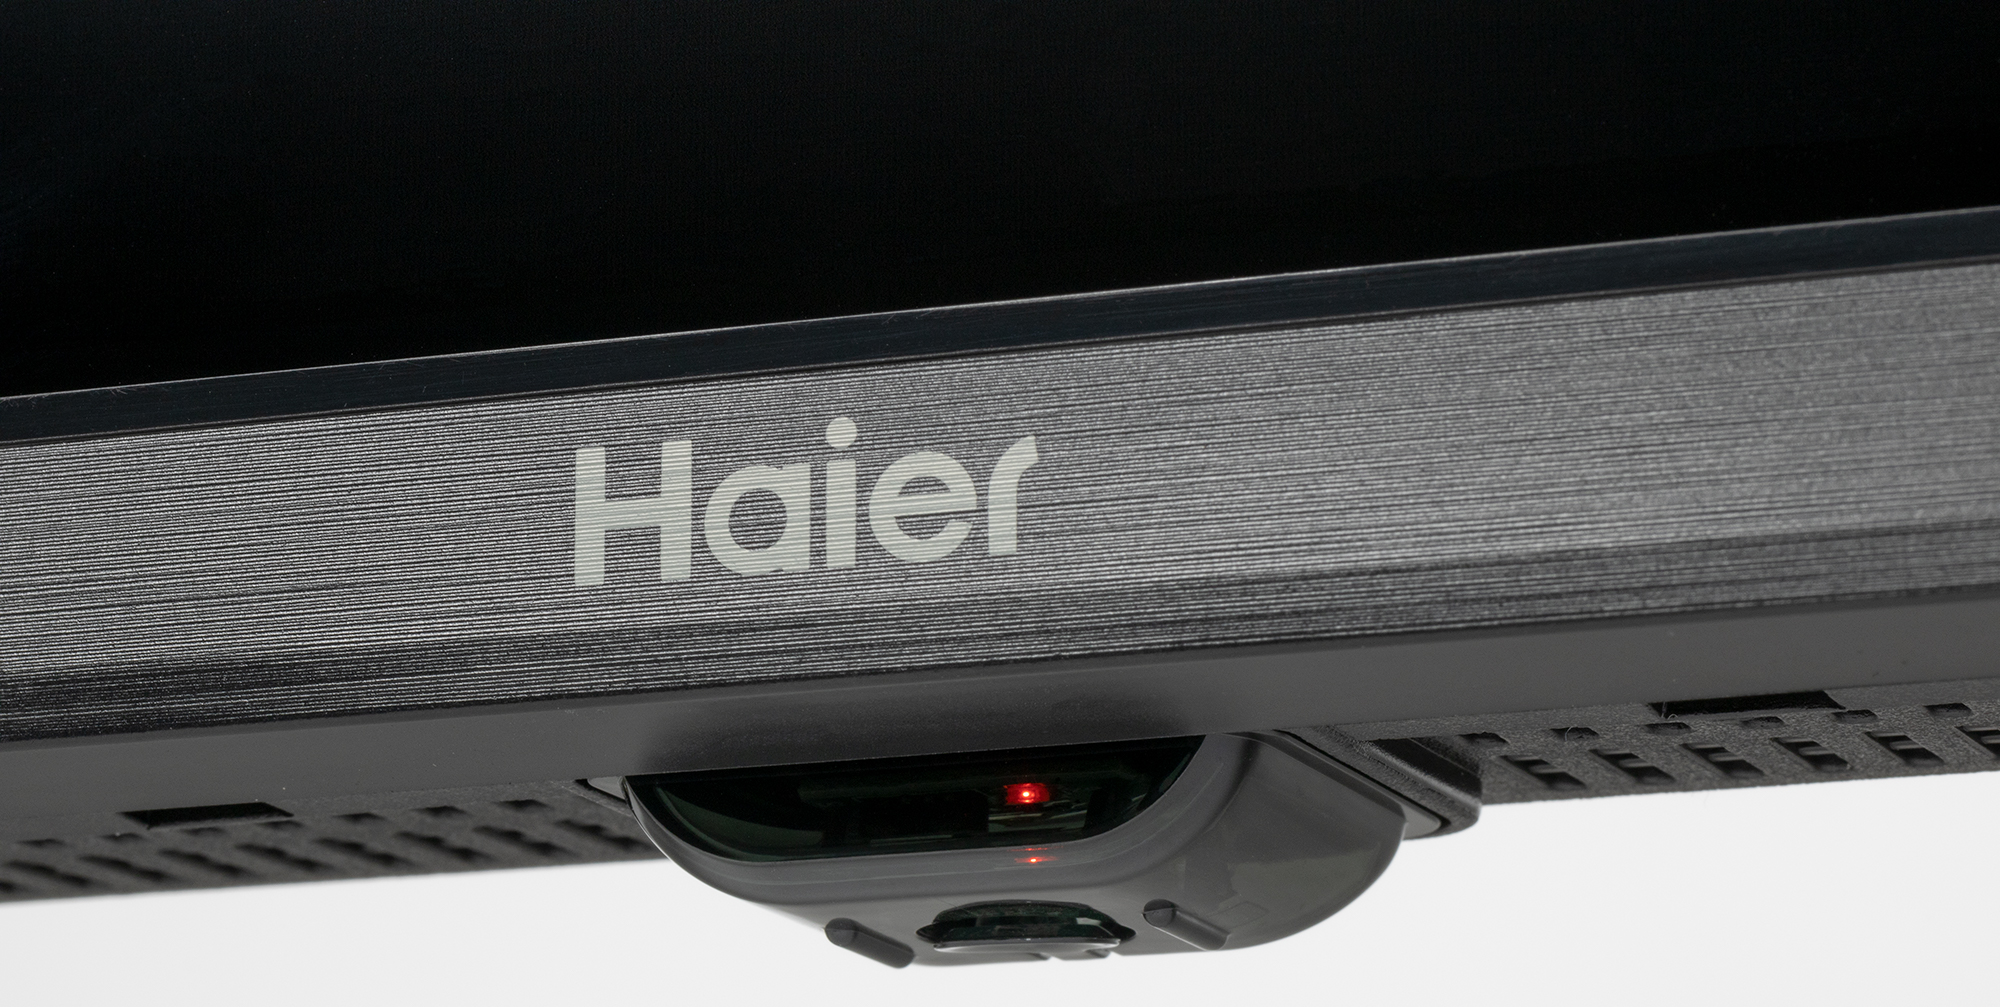 Haier 32 Smart Tv S1 Купить